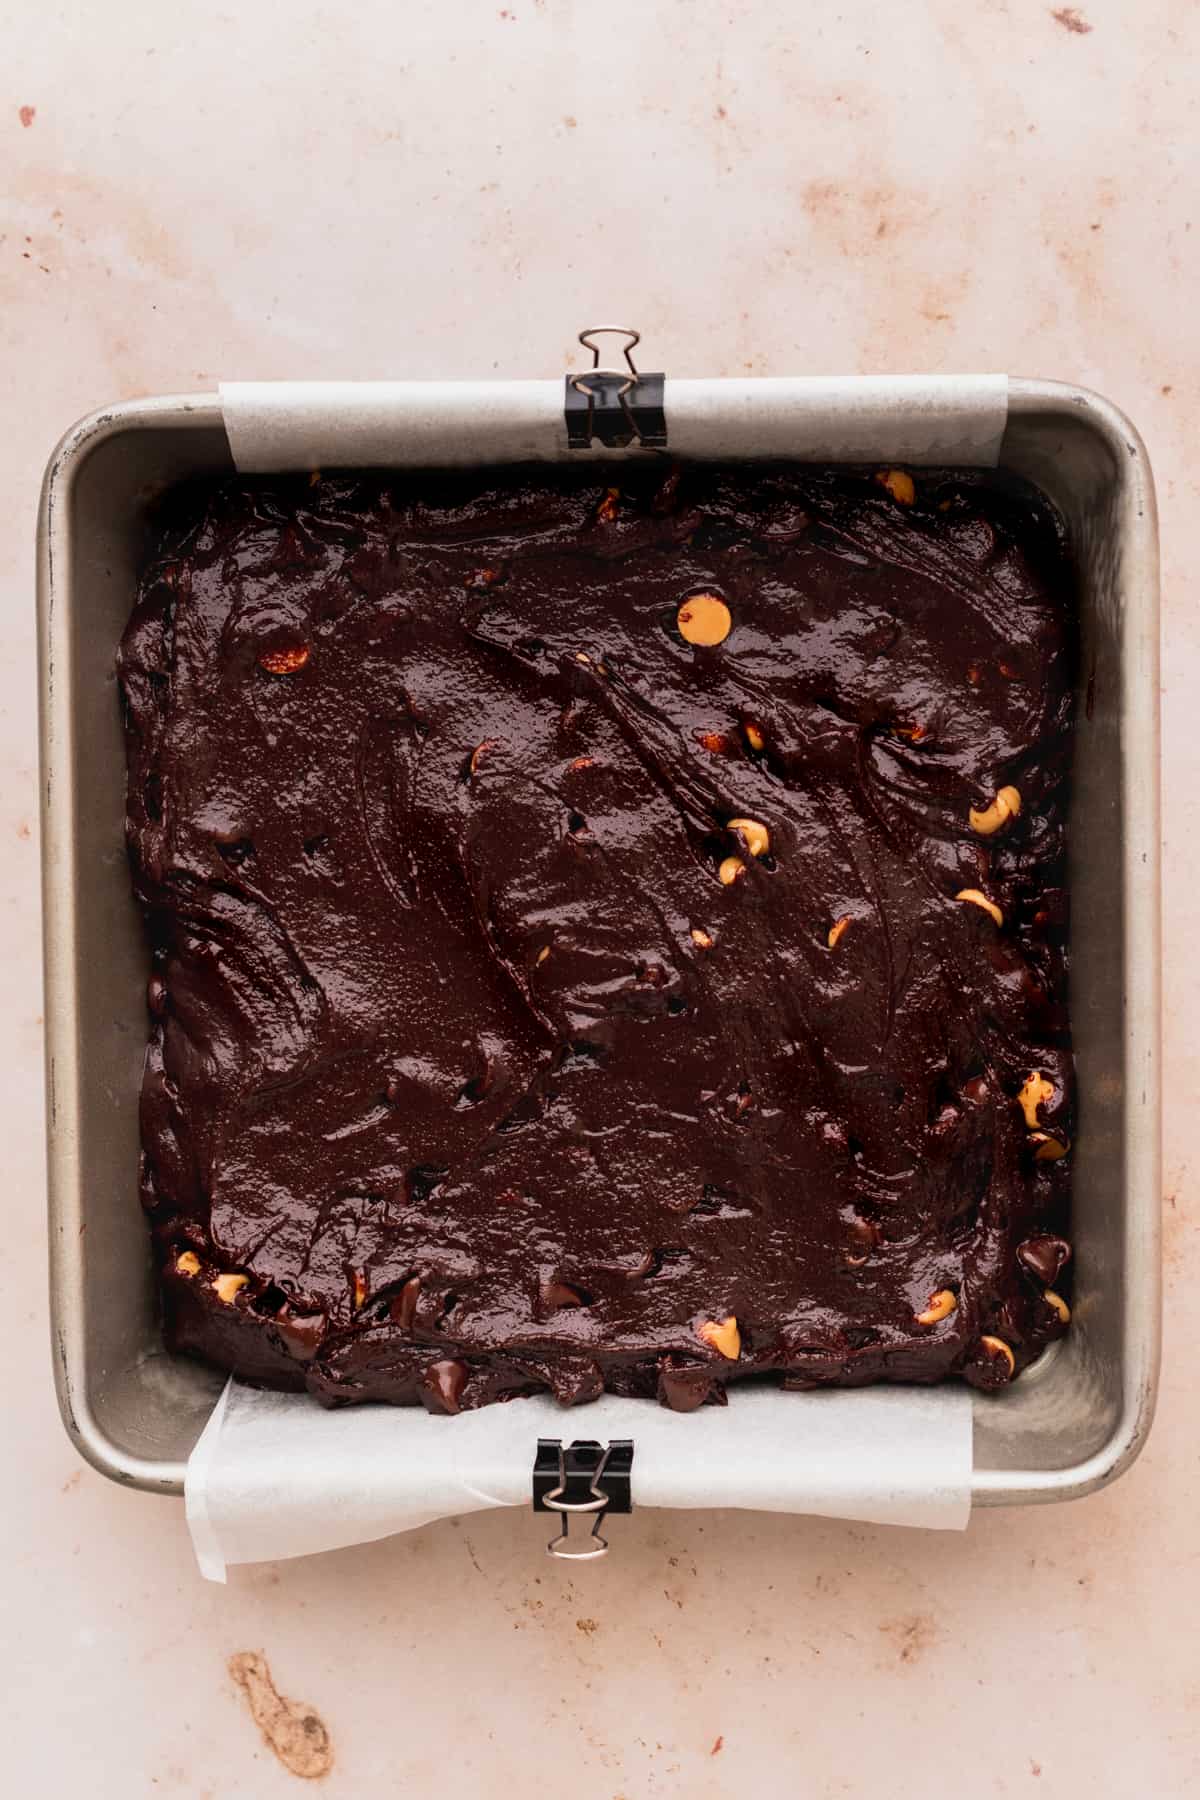 Brownie batter in a pan.